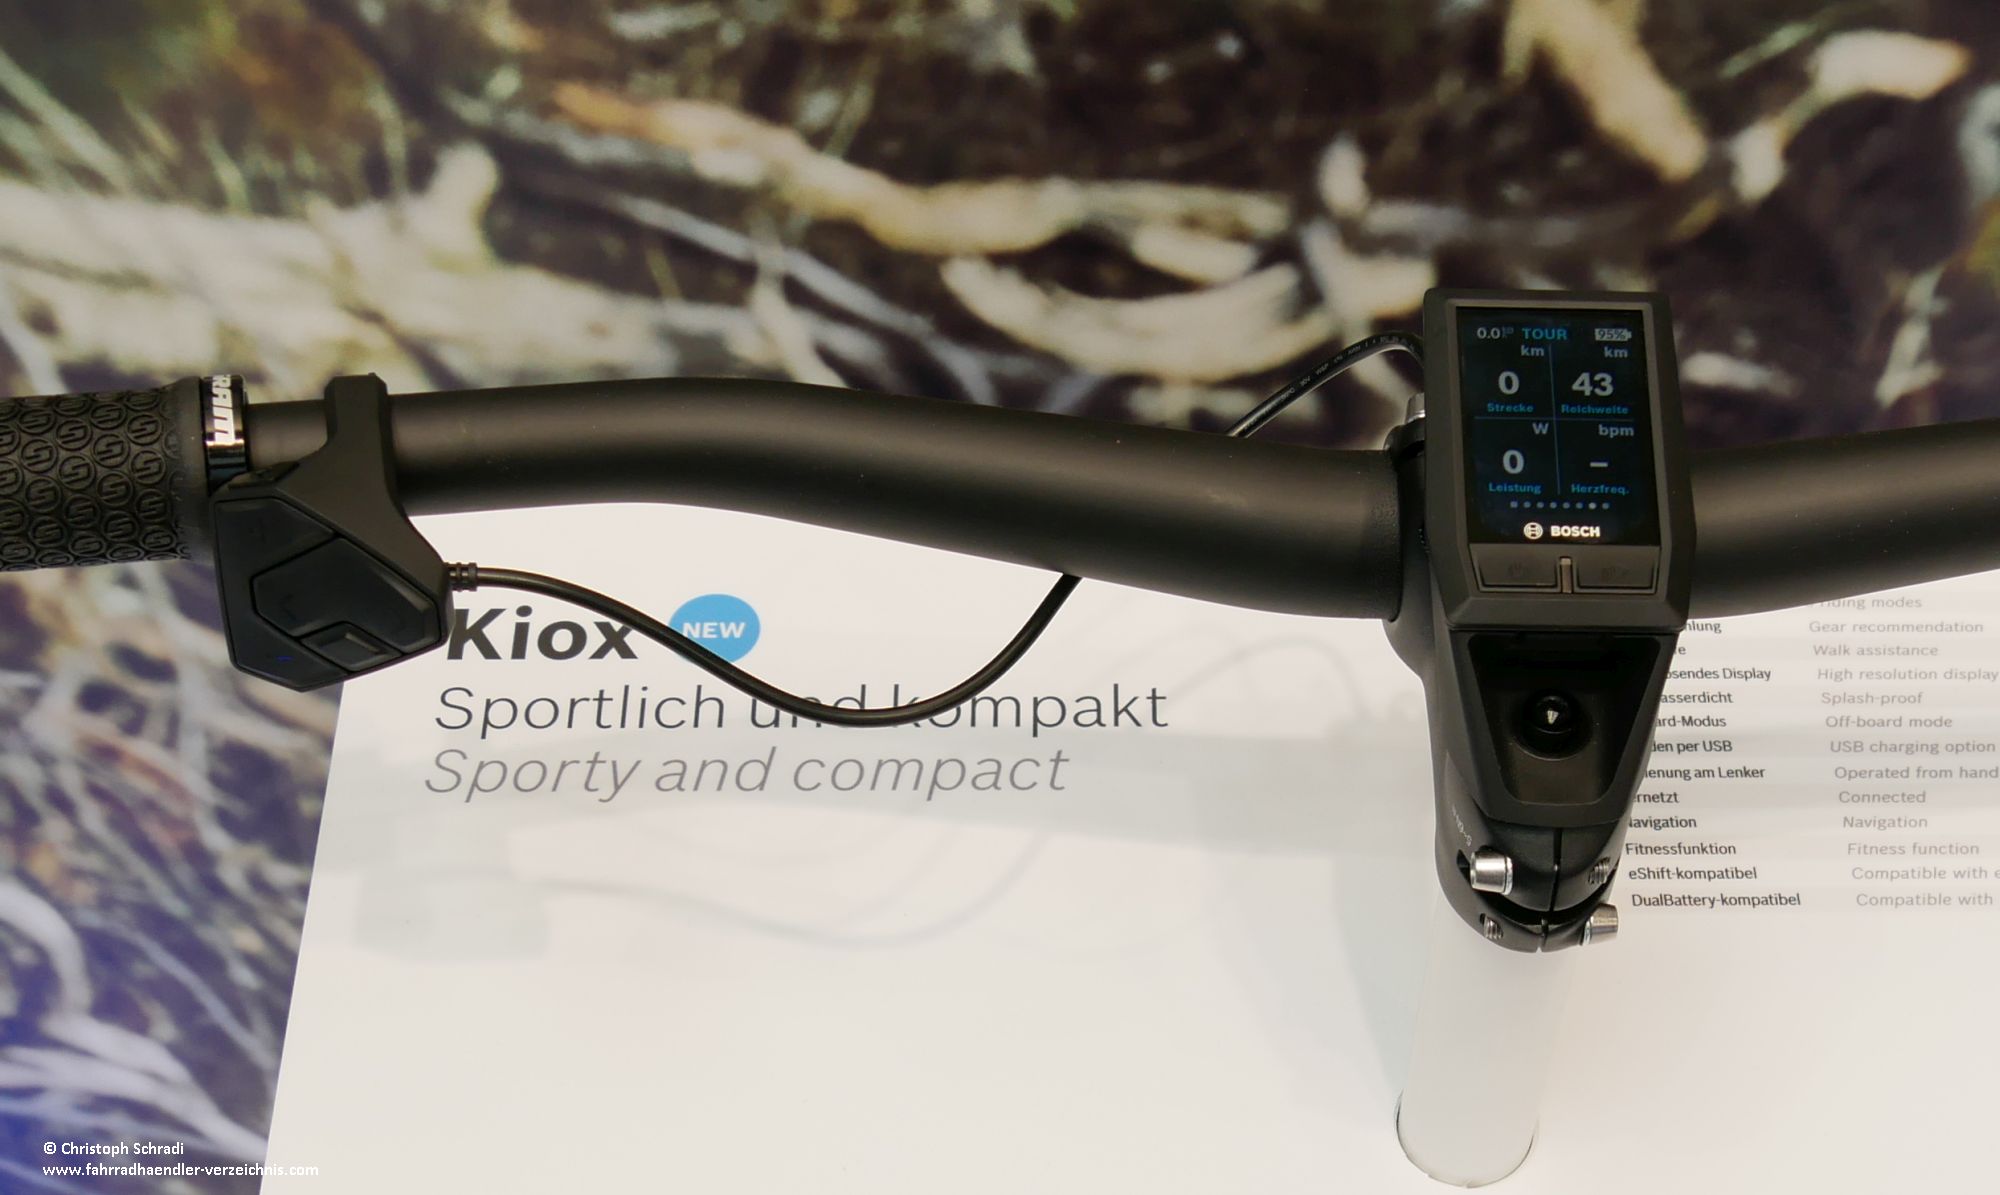 Boschs Kiox Display ist mit 1,9 Zoll klein gehalten und bietet eine ansprechende Bedienweise